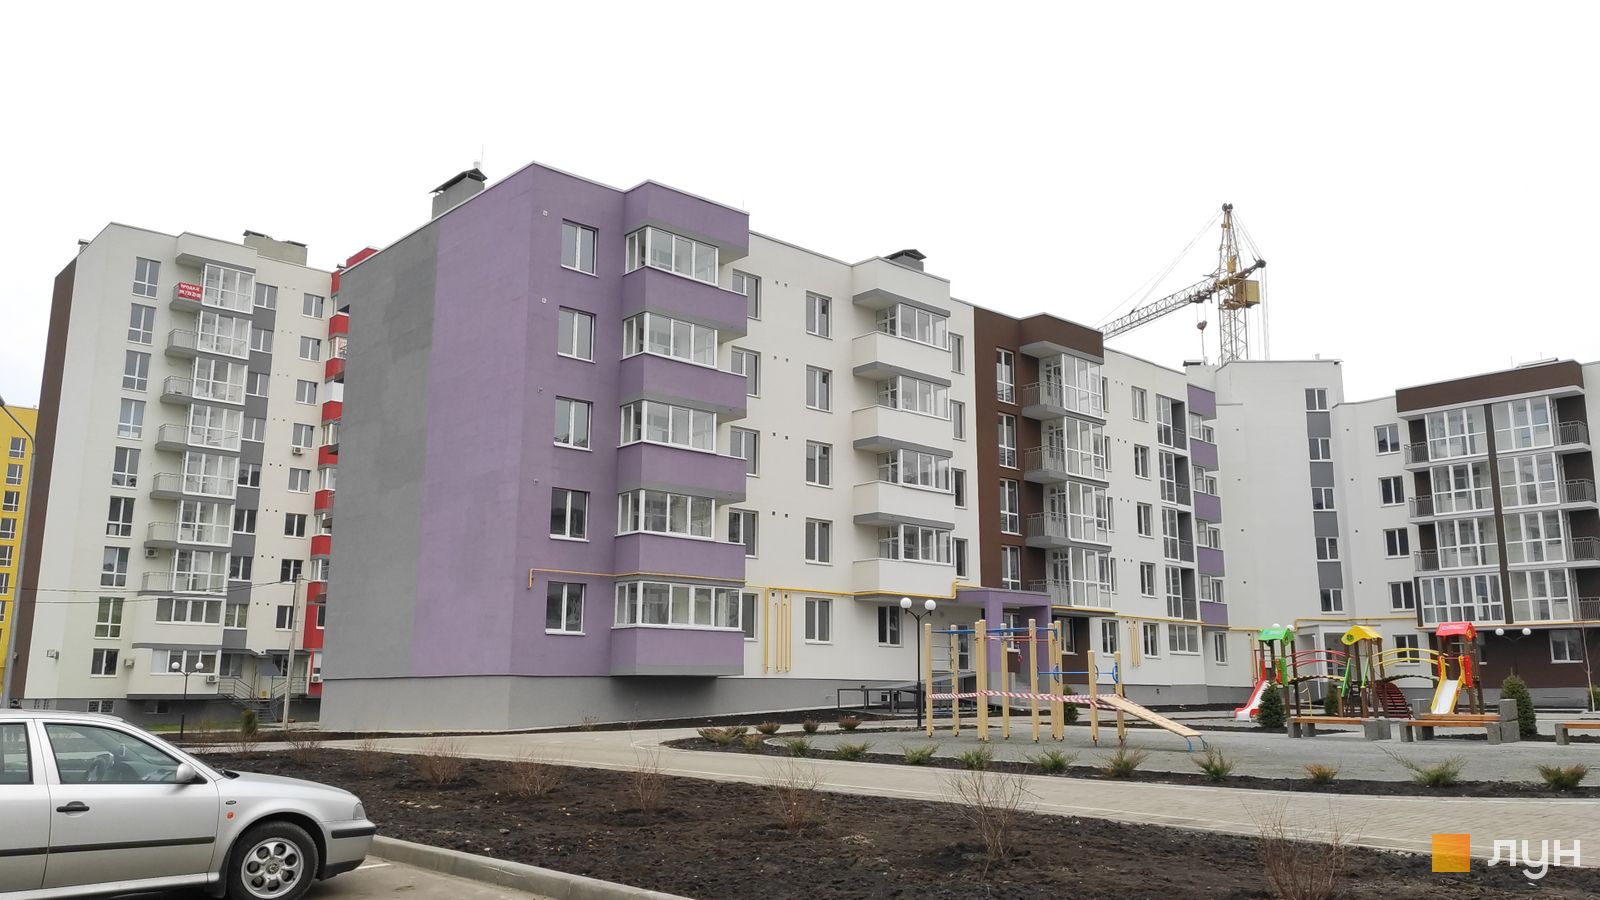 Моніторинг будівництва ЖМ Нова Буча - Ракурс 13, ноябрь 2019